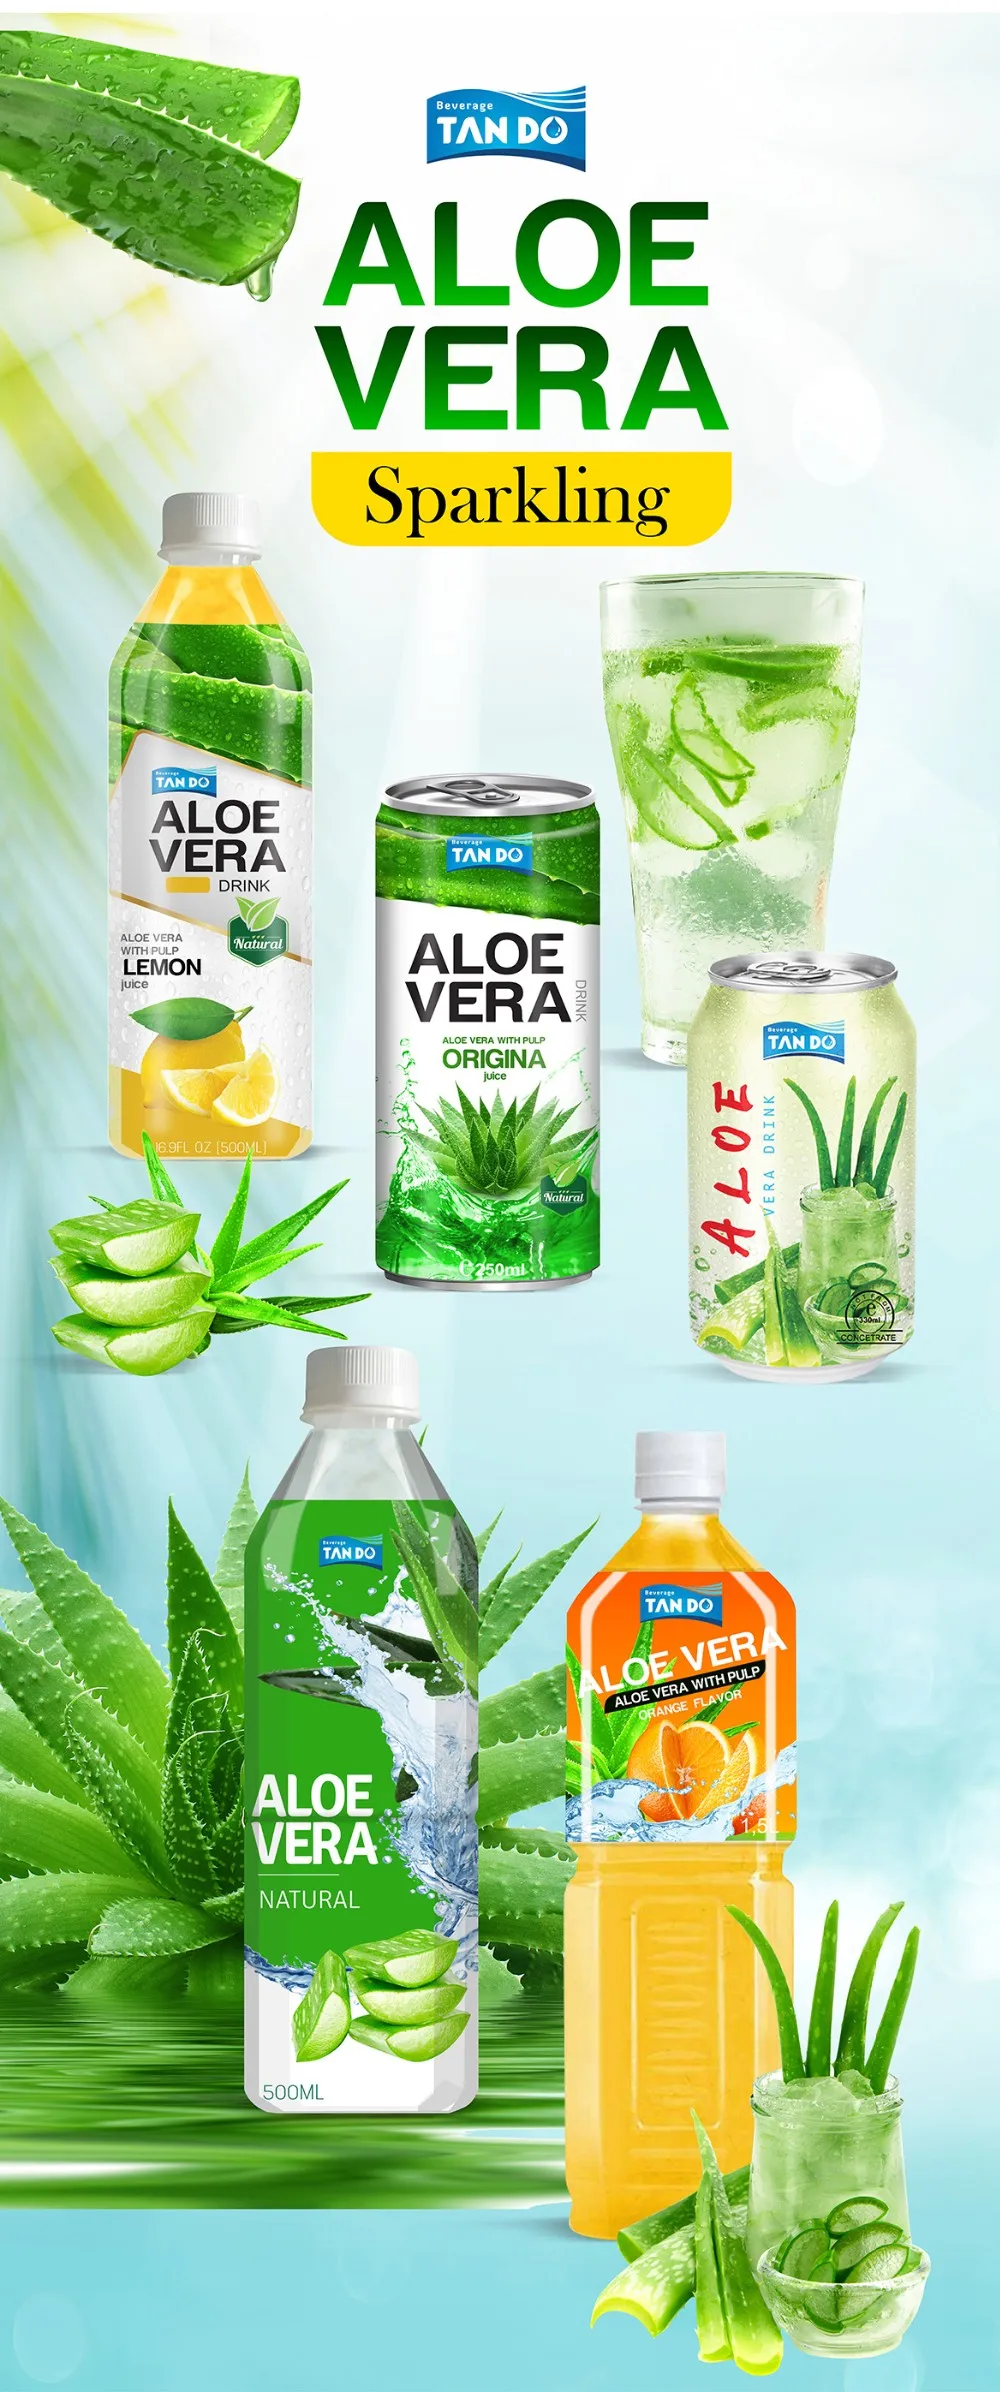 500ml Original Tando Aloe Vera Drink Buy Aloe Vera Drink With Pulp Aloe Vera Juice With Pulp 9434